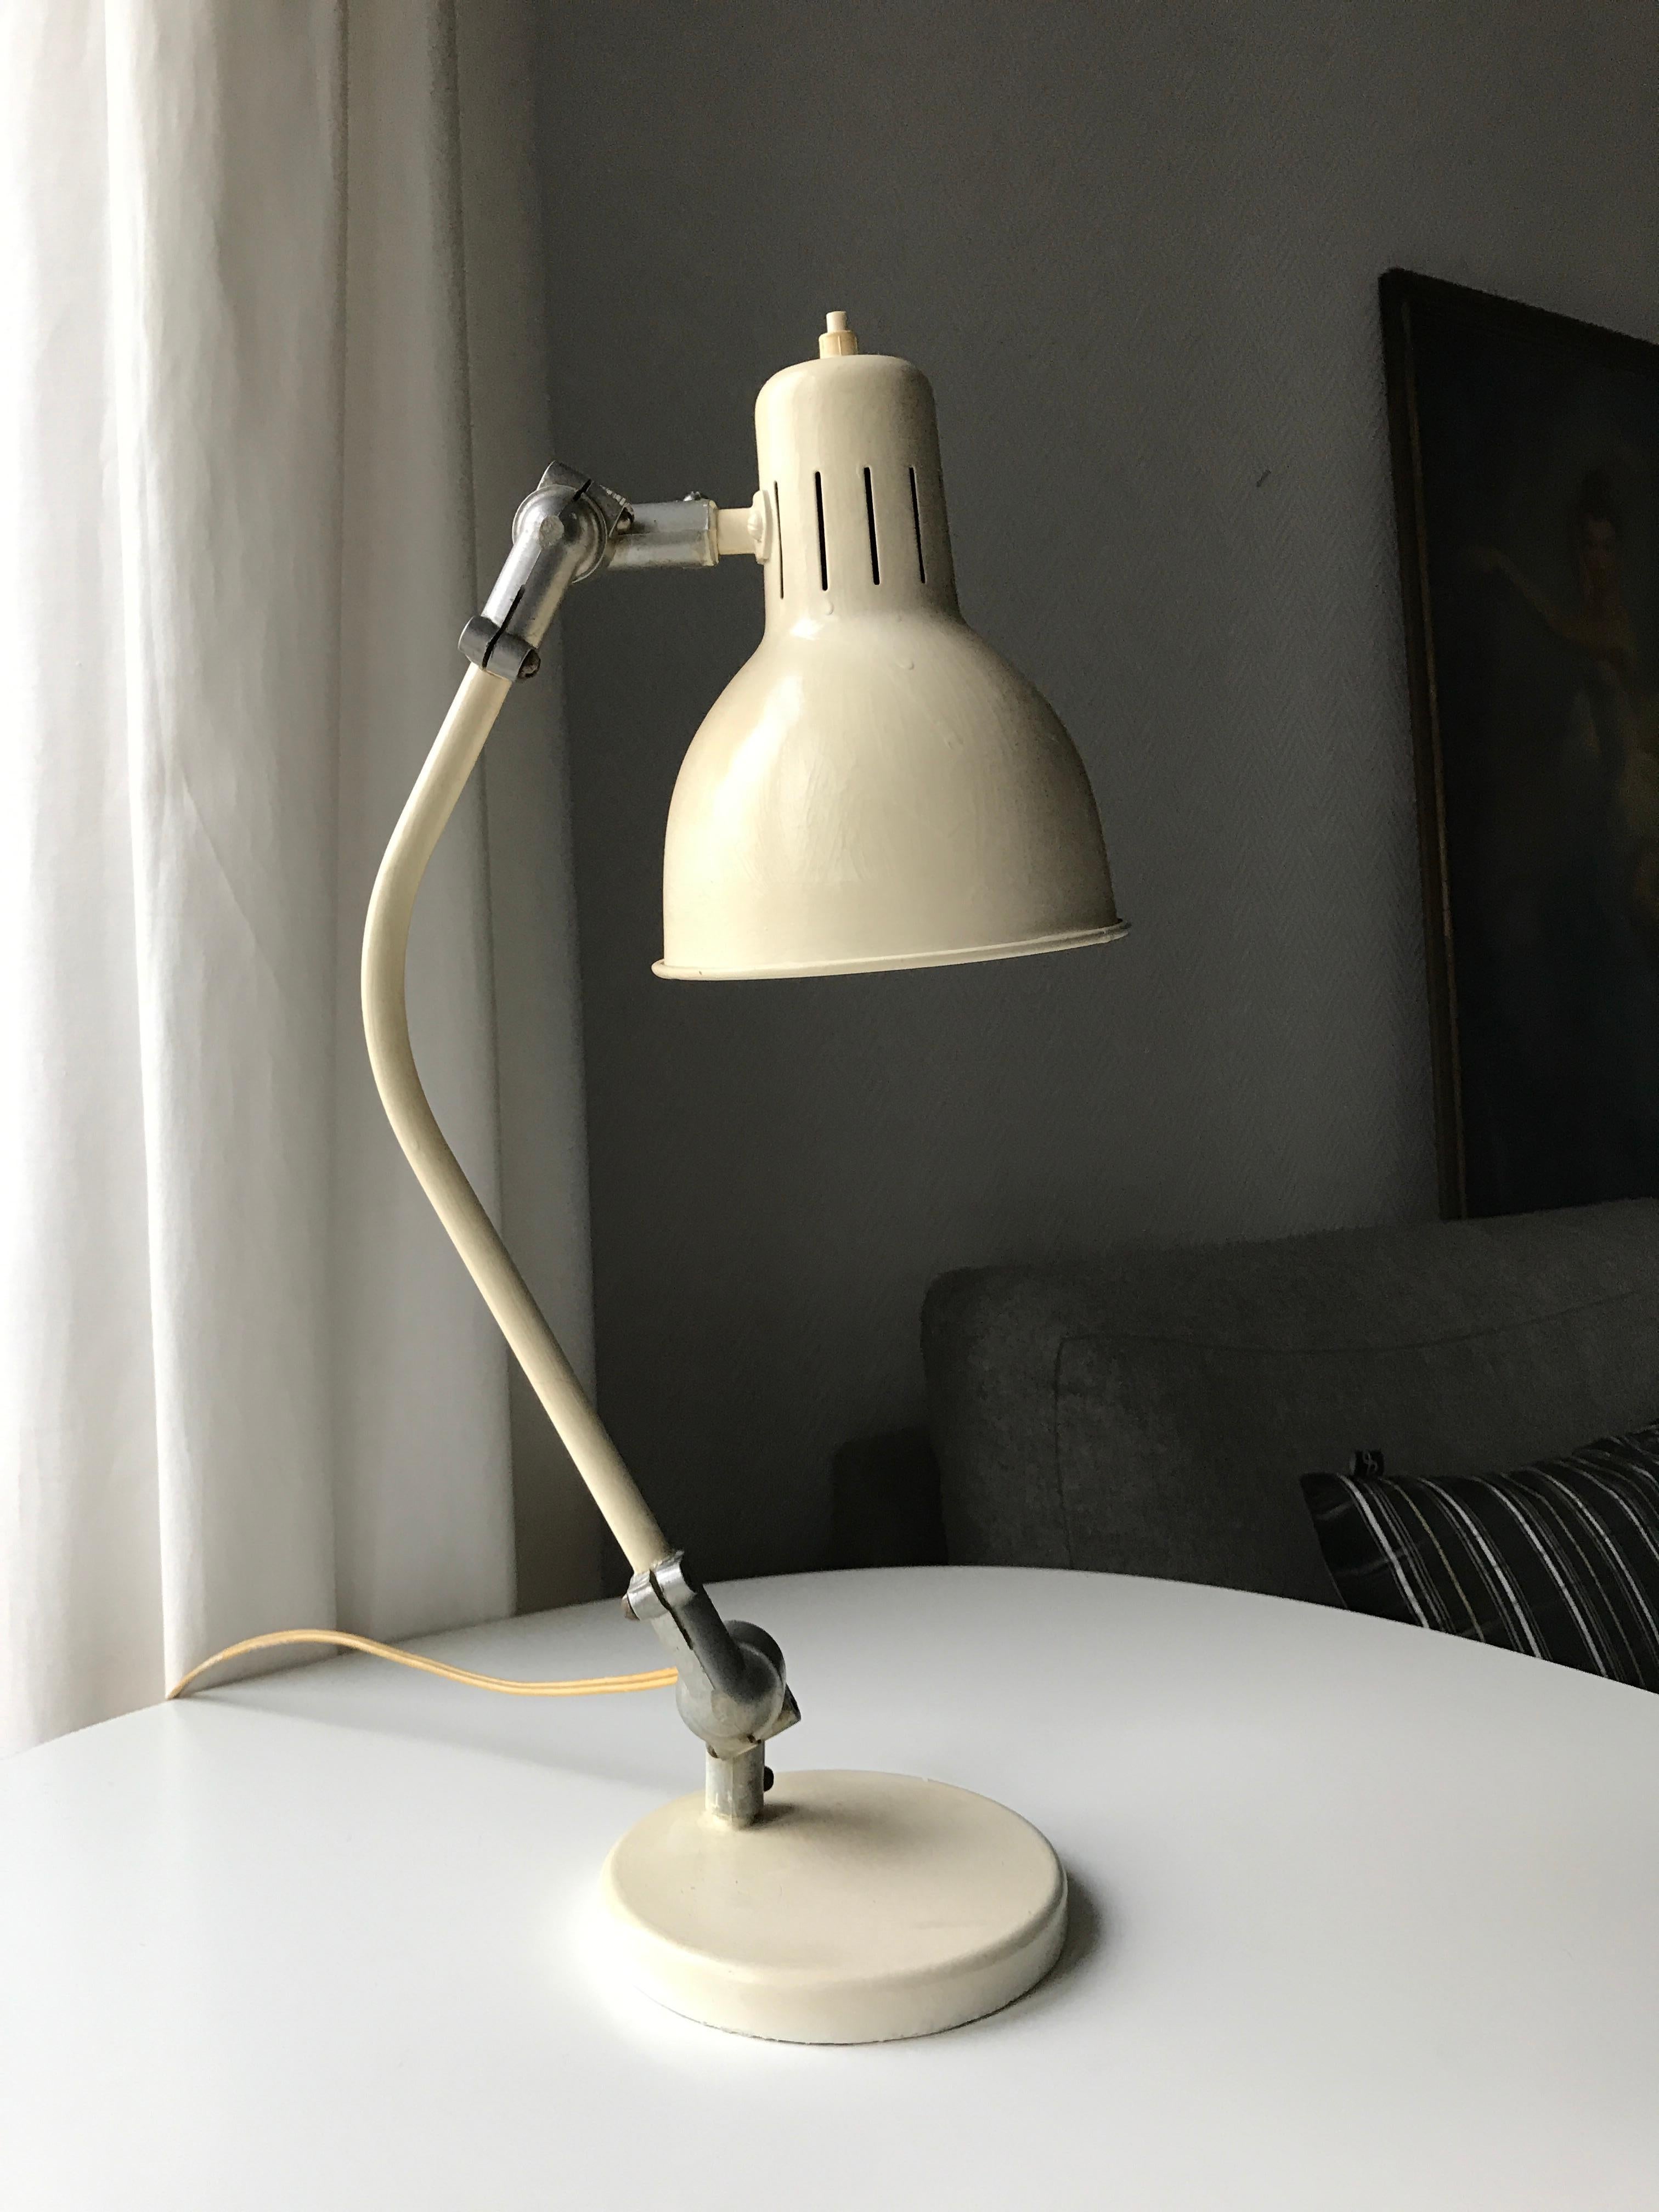 RIJO Industrial Style Belgium Midcentury Desk Lamp In Good Condition For Sale In Copenhagen, DK